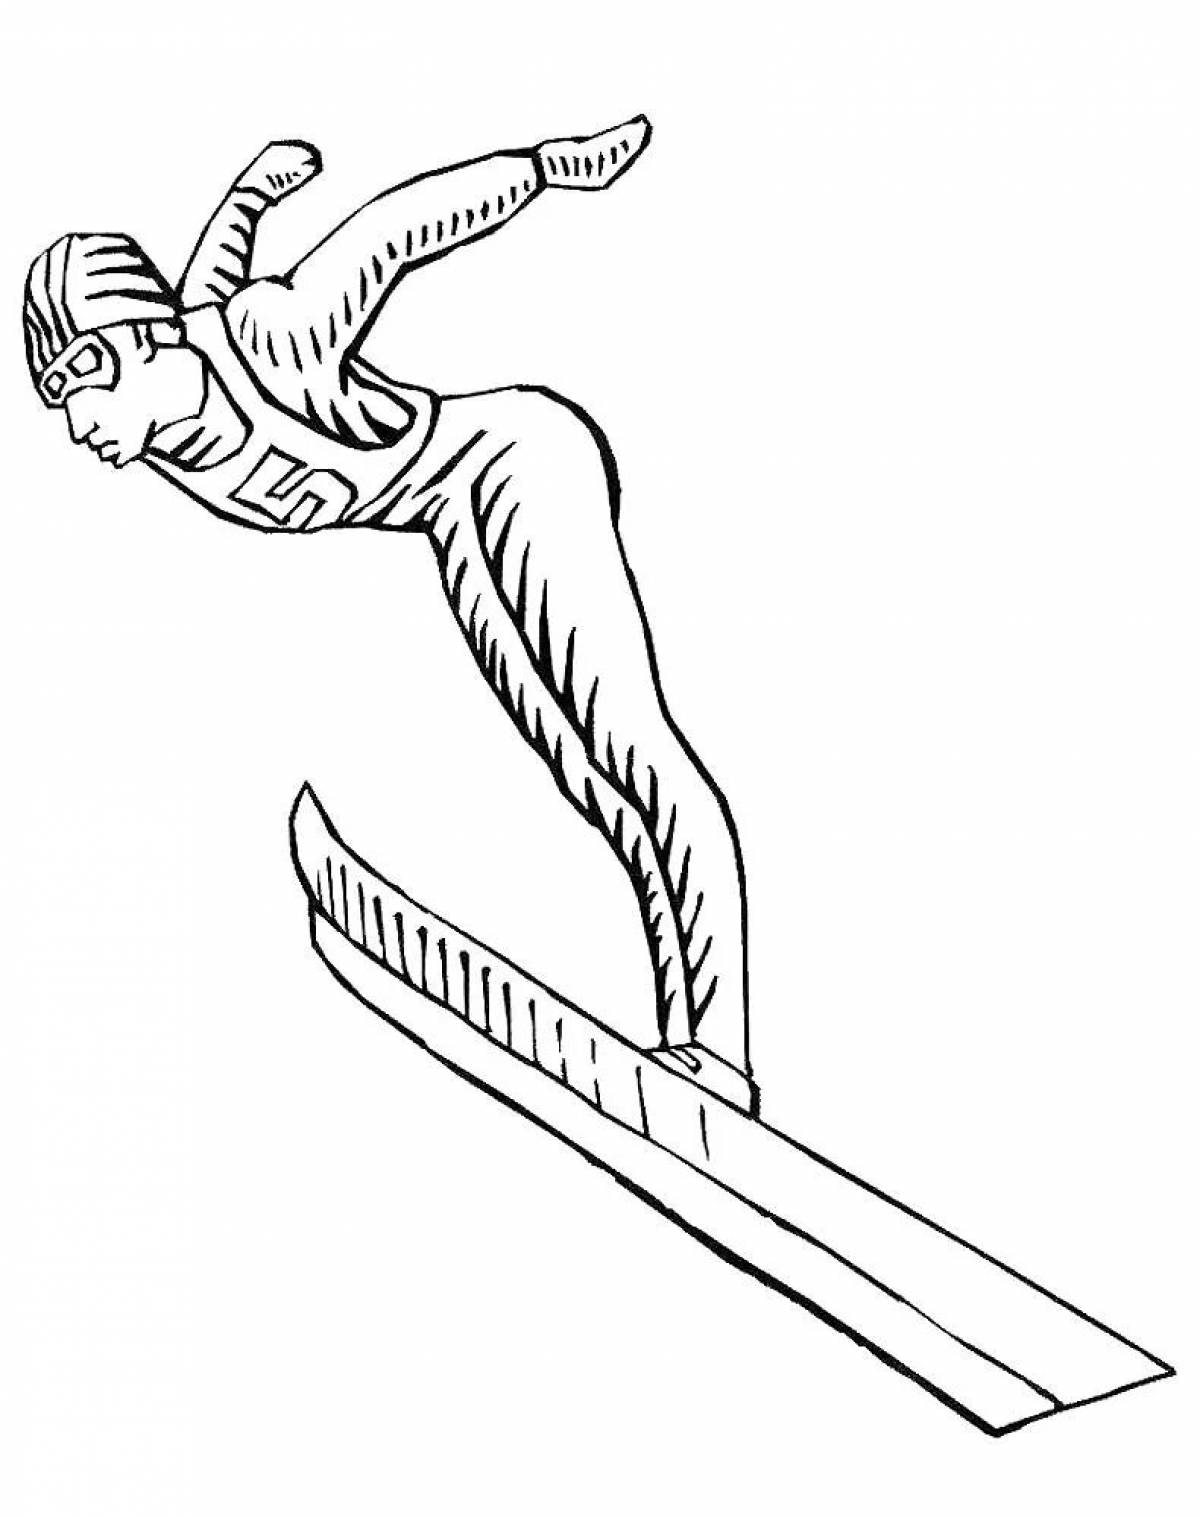 Ski jumping #2